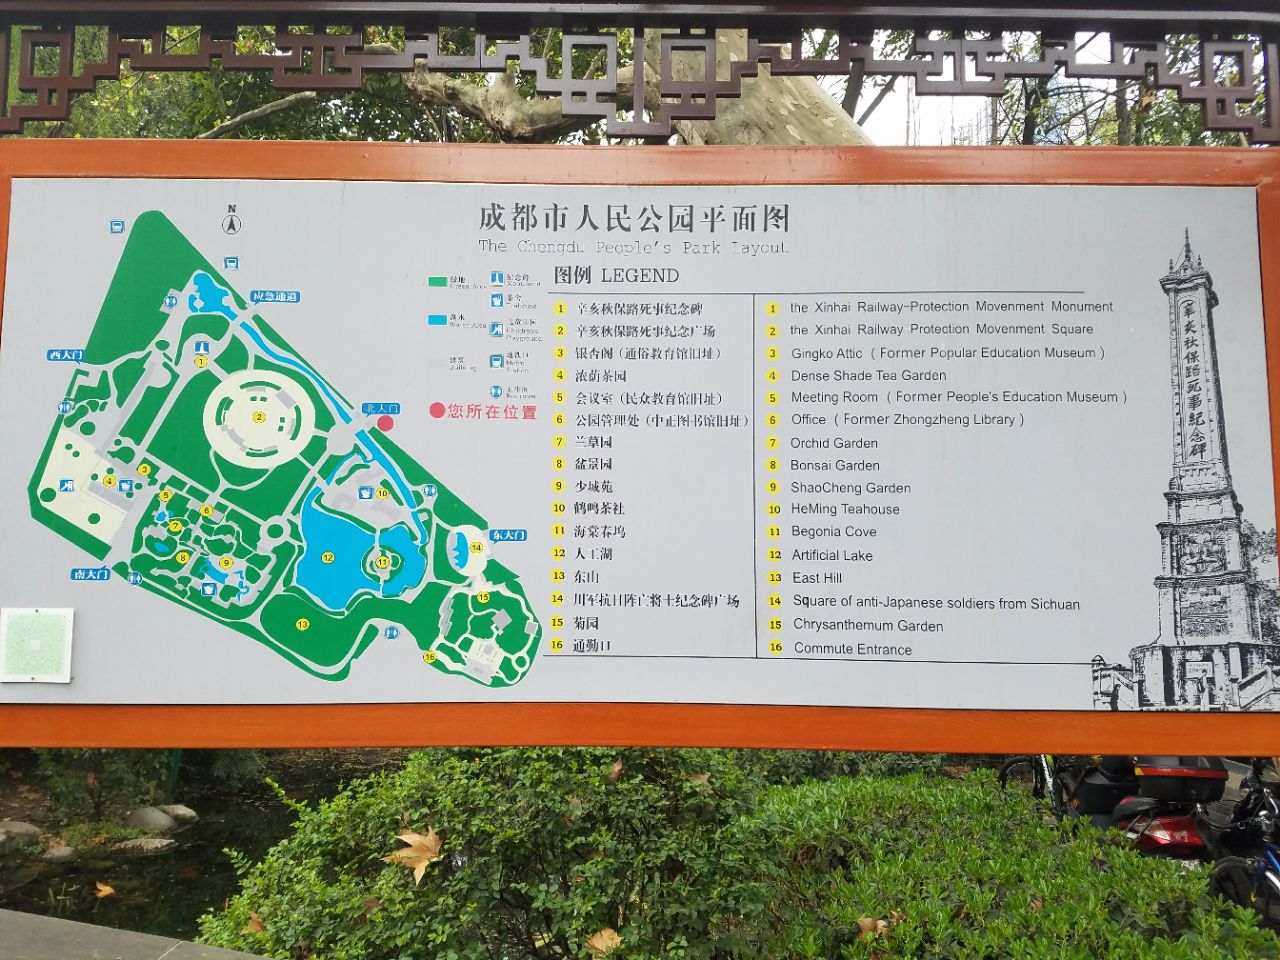 南宁人民公园游览地图图片